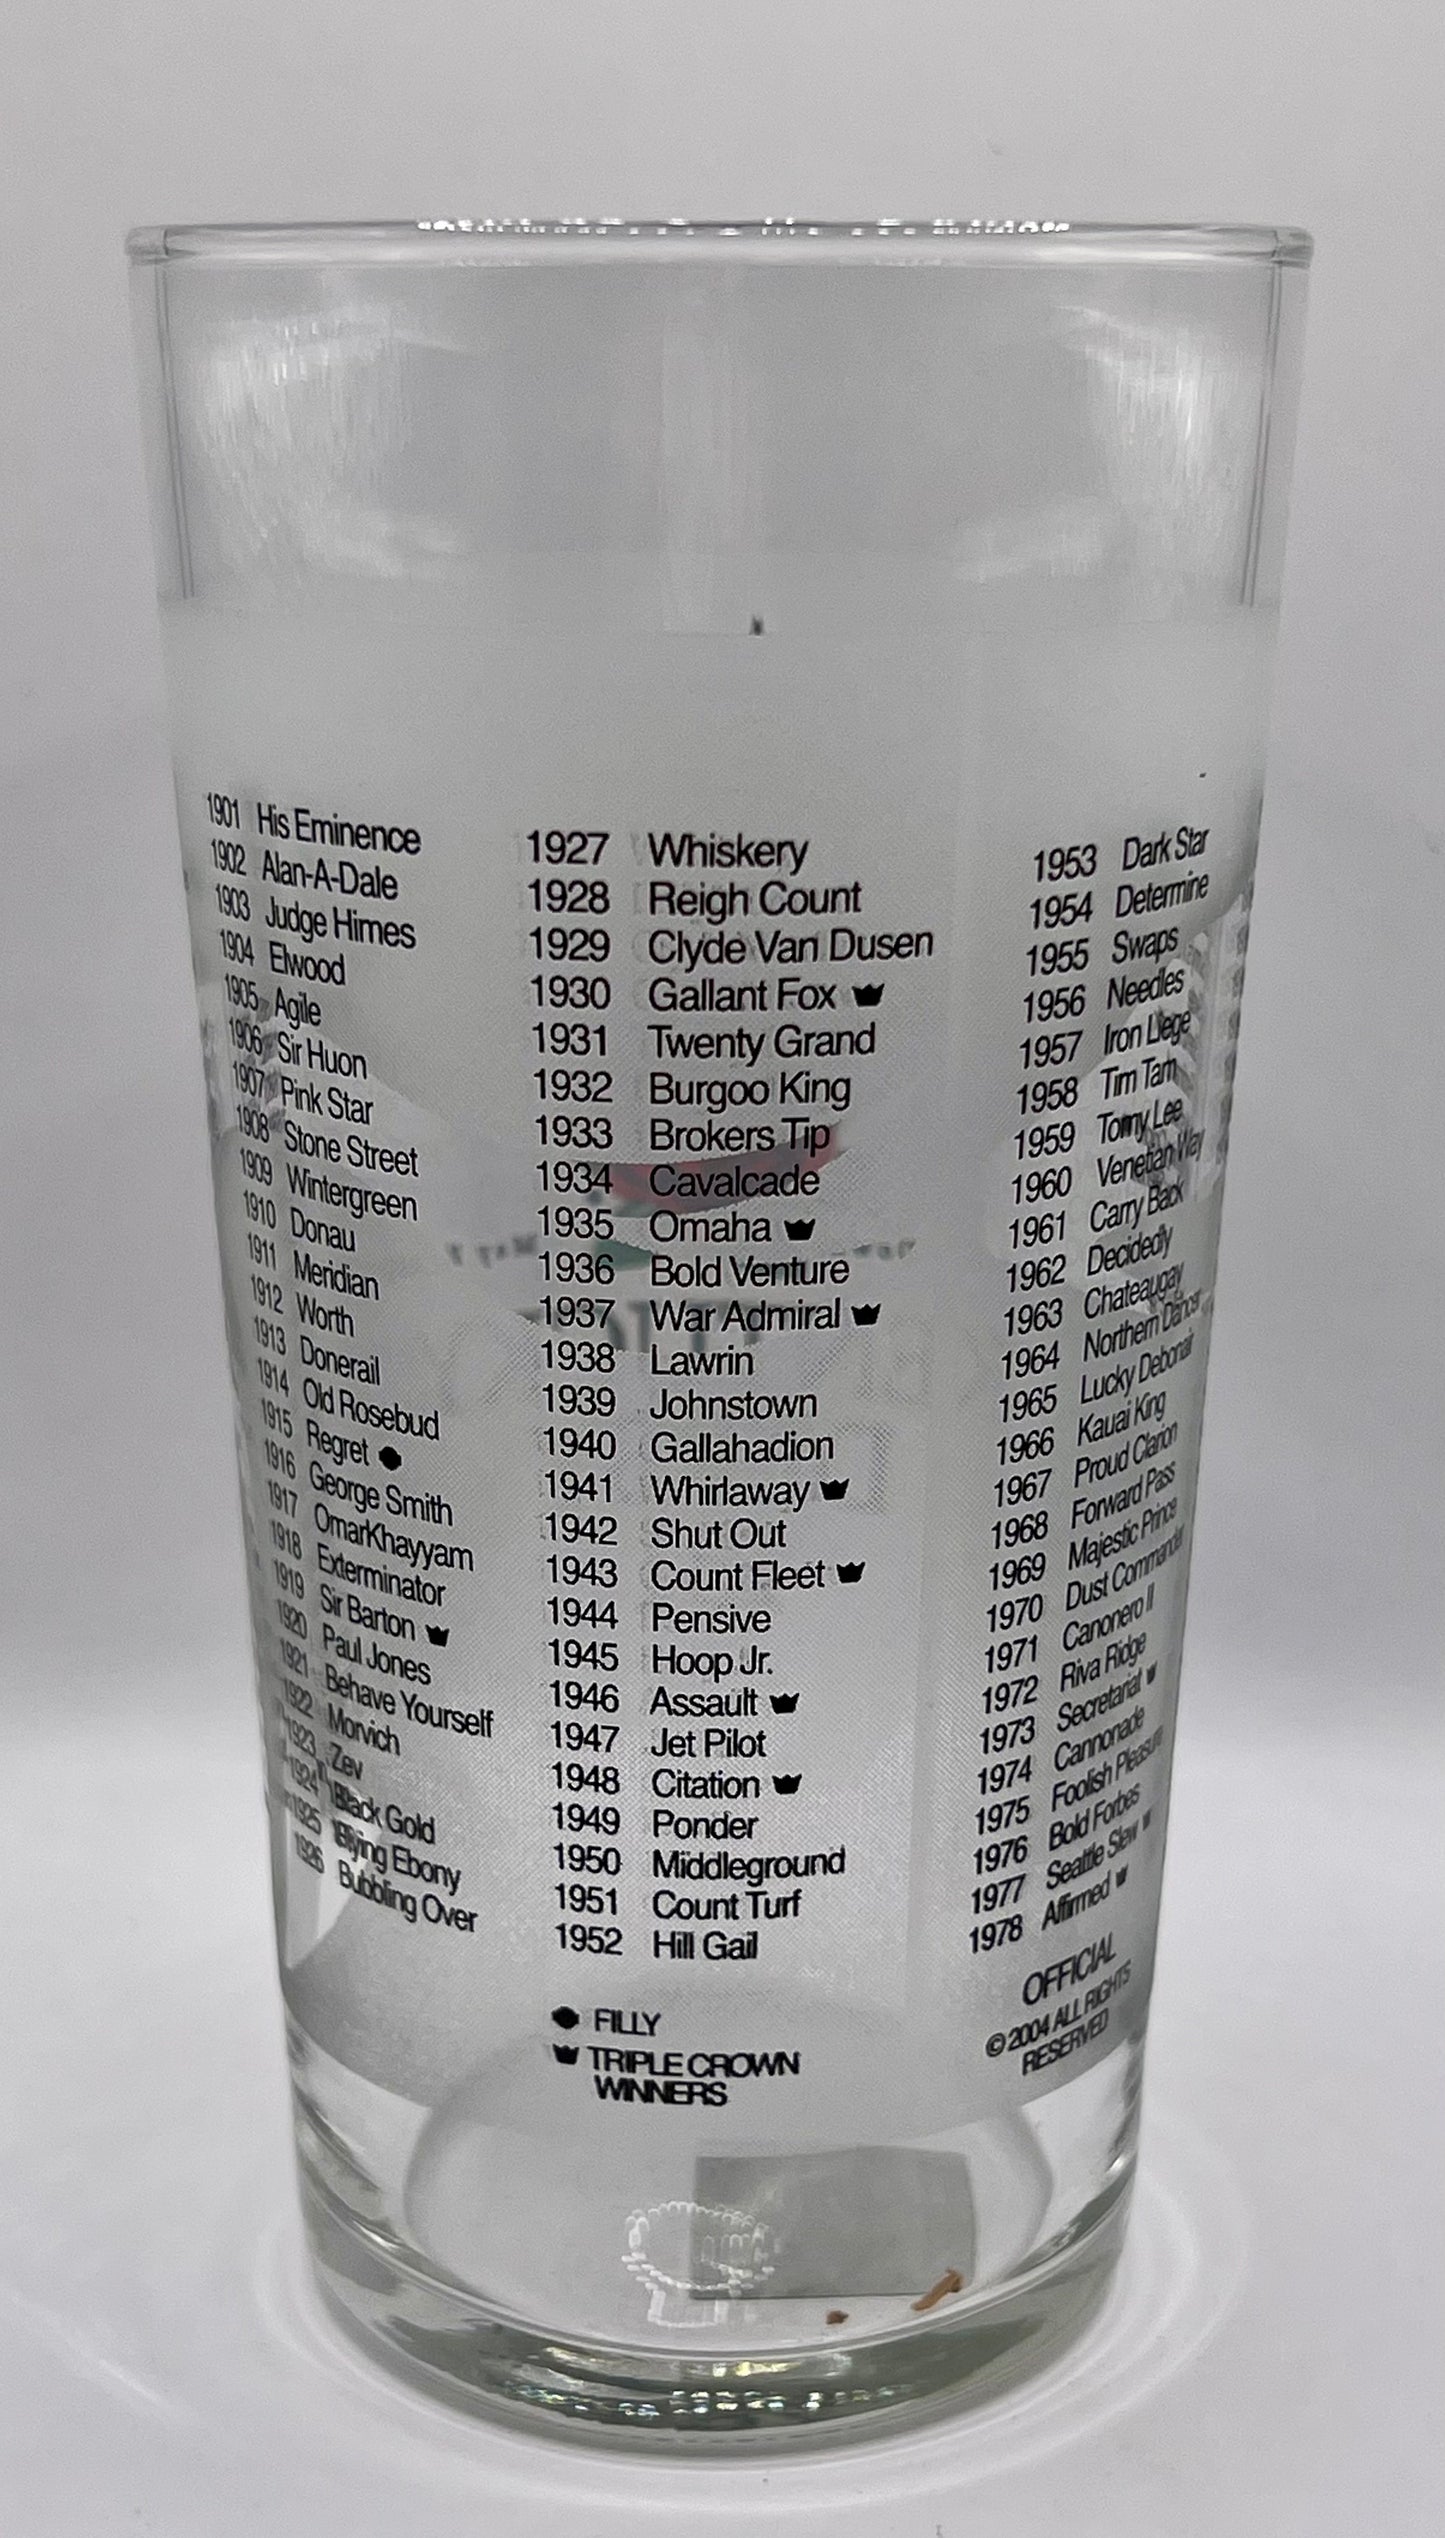 2005 Kentucky Derby Glass